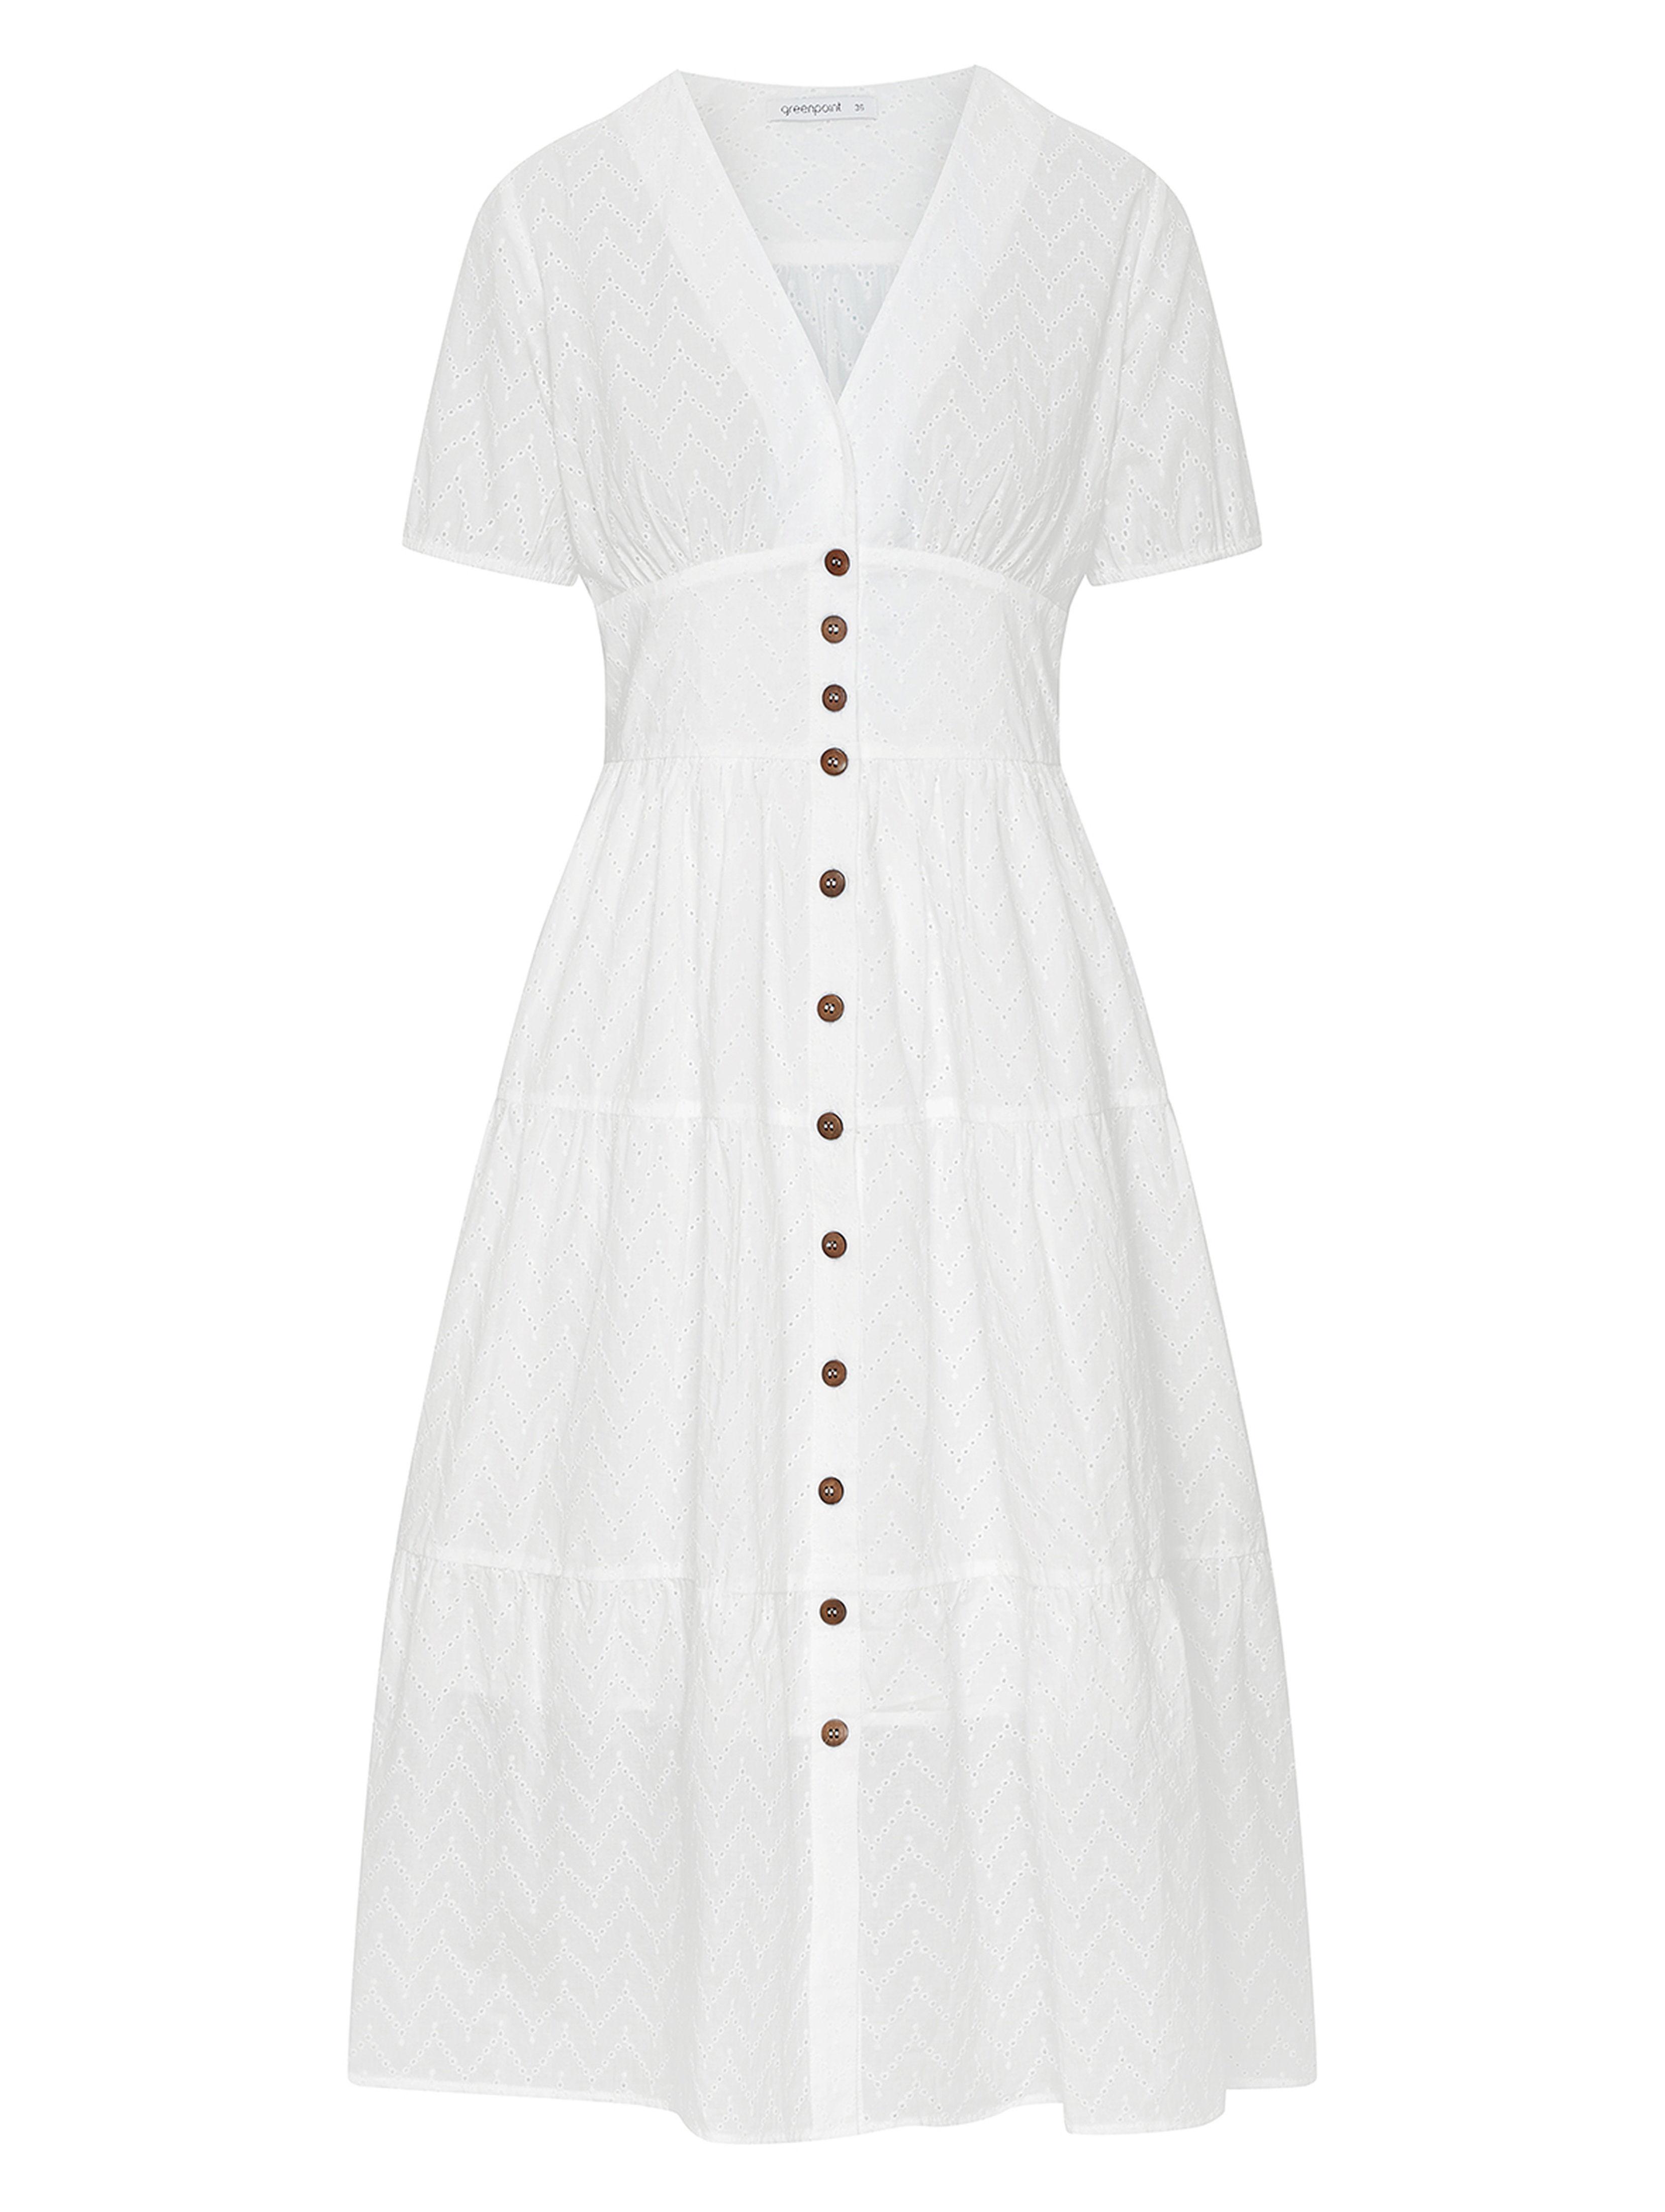 Biała bawełniana sukienka damska zapinana na guziki